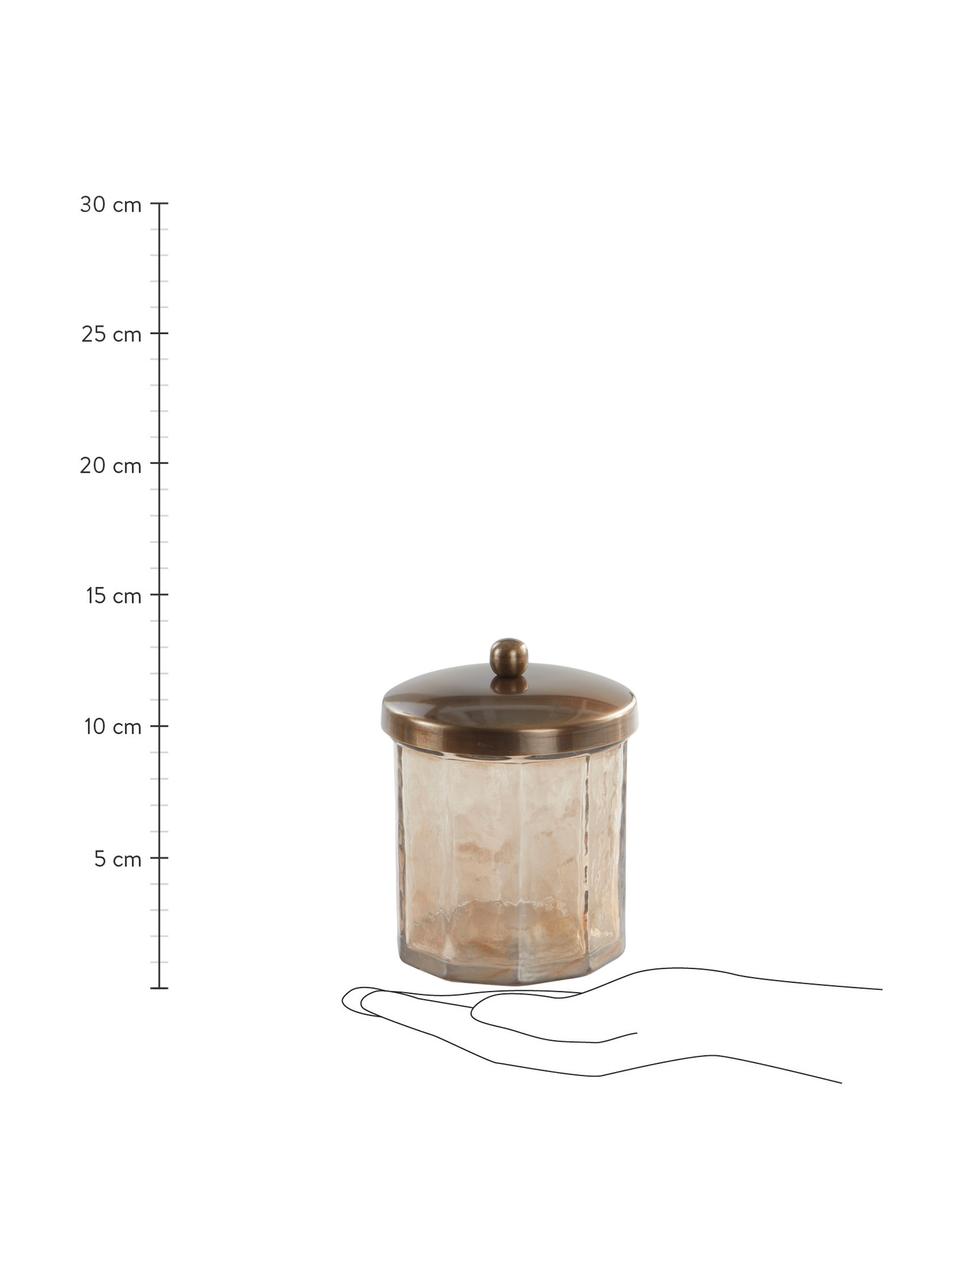 Aufbewahrungsdose Charlisa in Braun/Transparent, Dose: Zierglas, Deckel: Metall, beschichtet, Braun, Transparent, Ø 10 x H 13 cm